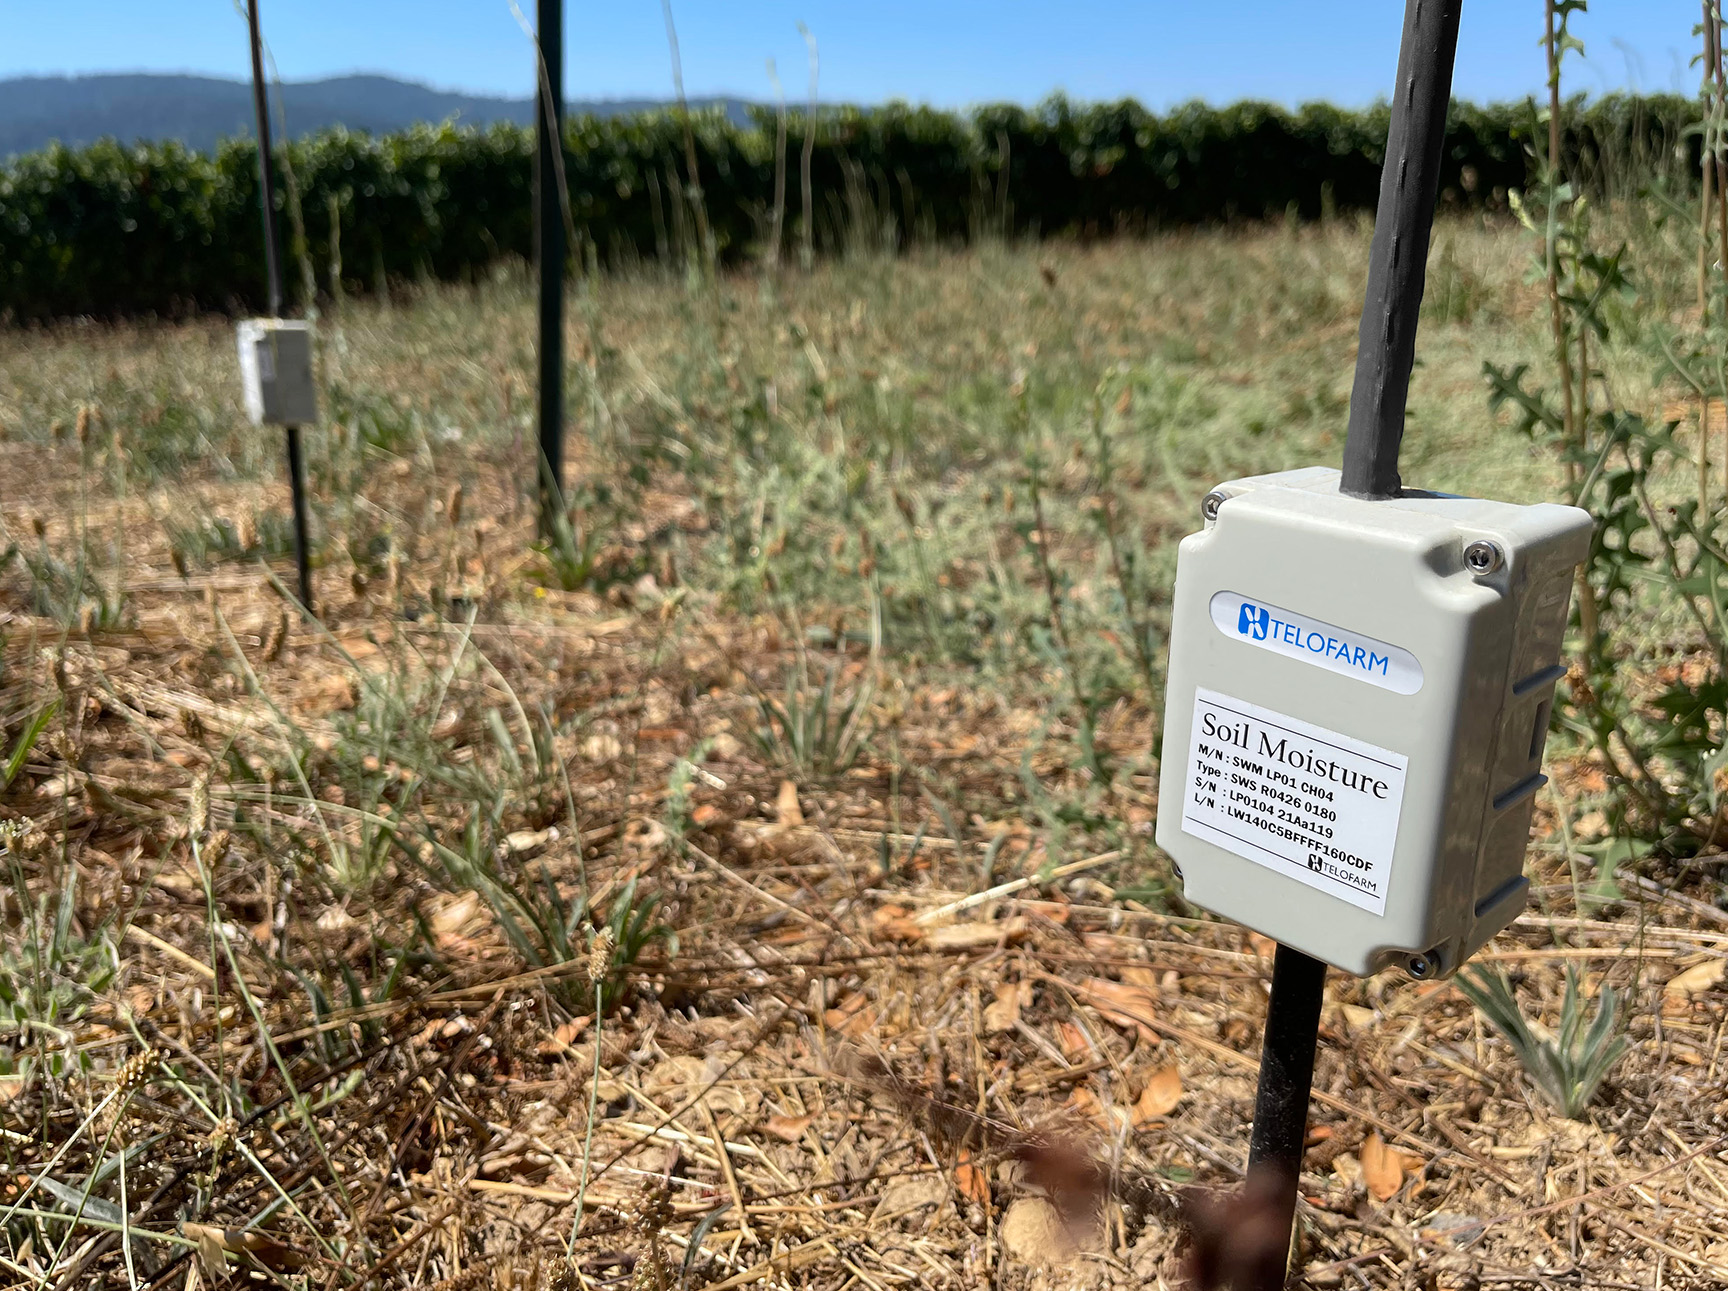 Soil moisture sensors installed in a field